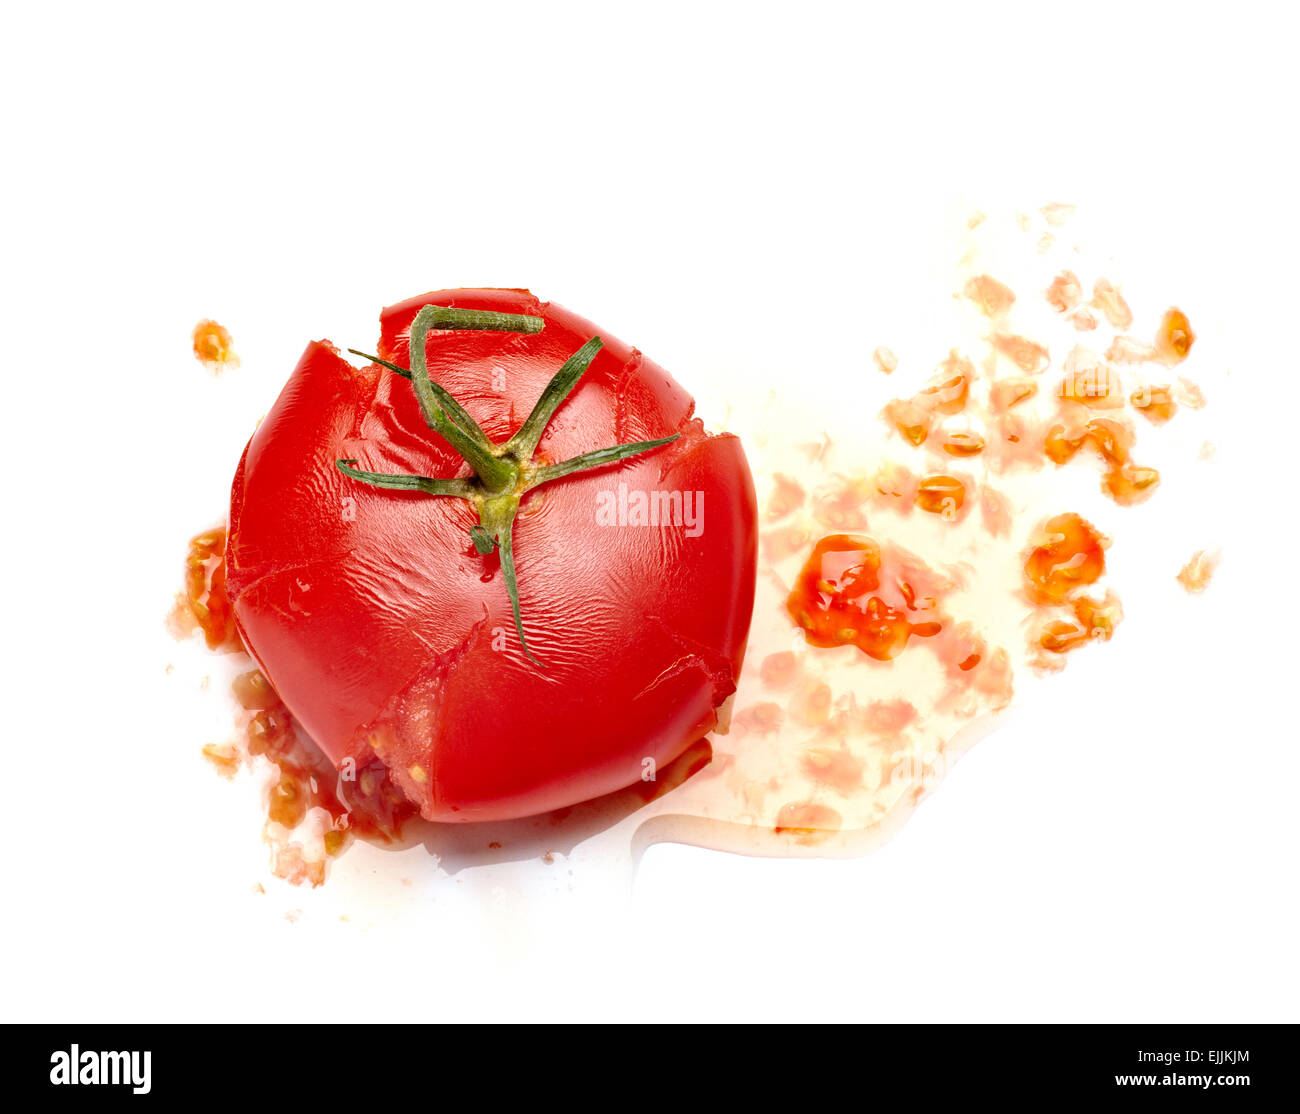 smashed tomato Stock Photo